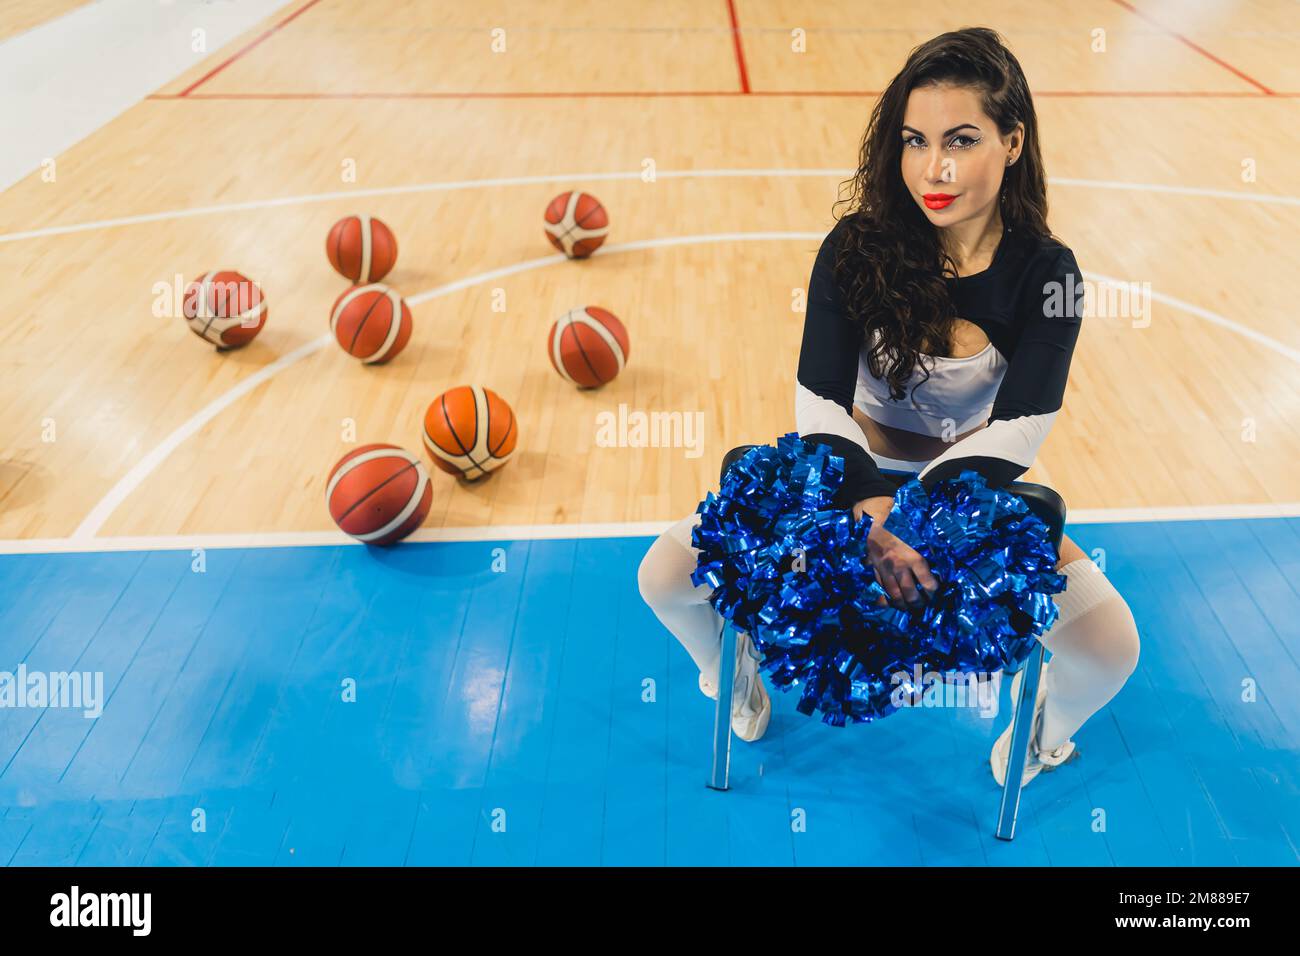 Un cheerleader attraente siede con fiducia, tenendo i suoi pom-pom. È vestita con una camicia nera e calzini alti. Un senso di potenza ed energia. Dietro di lei si può vedere un mucchio di palline da basket. Foto Stock